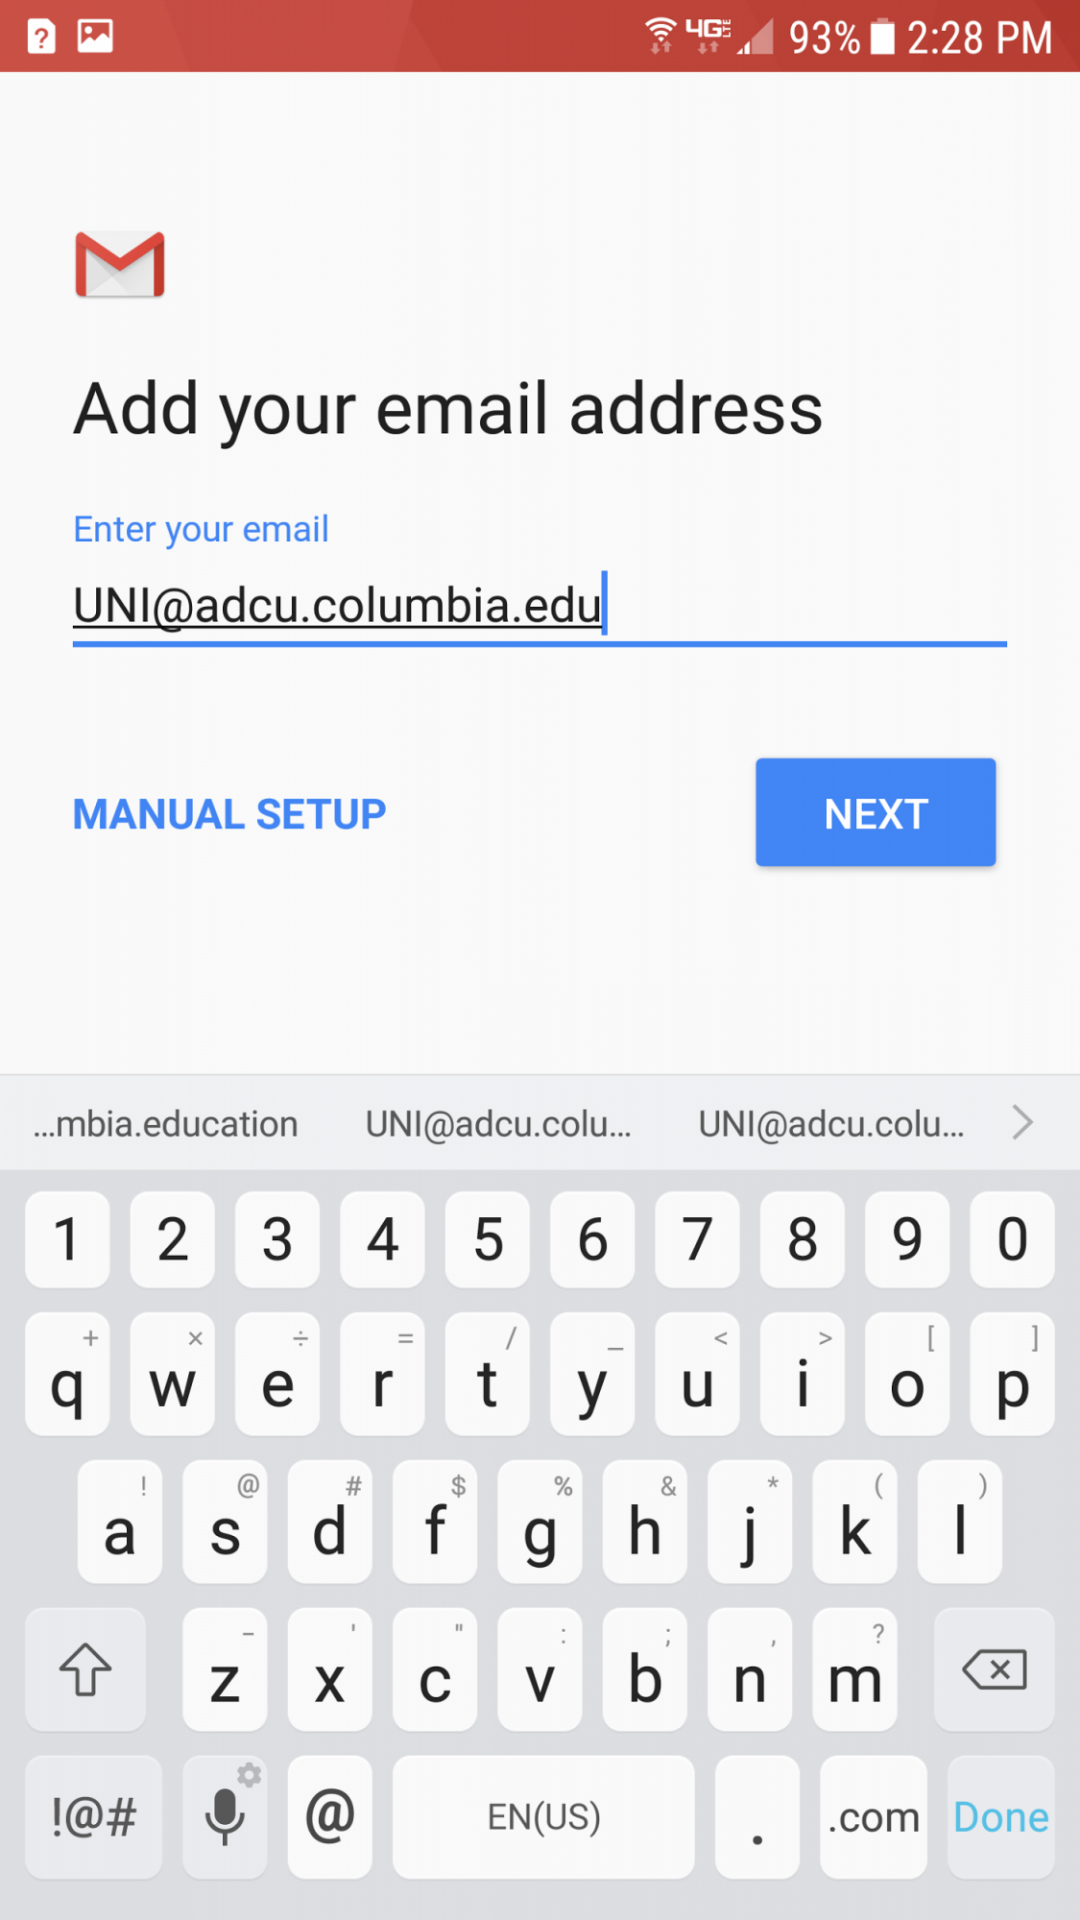 UNI@adcu.columbia.edu entered in email field